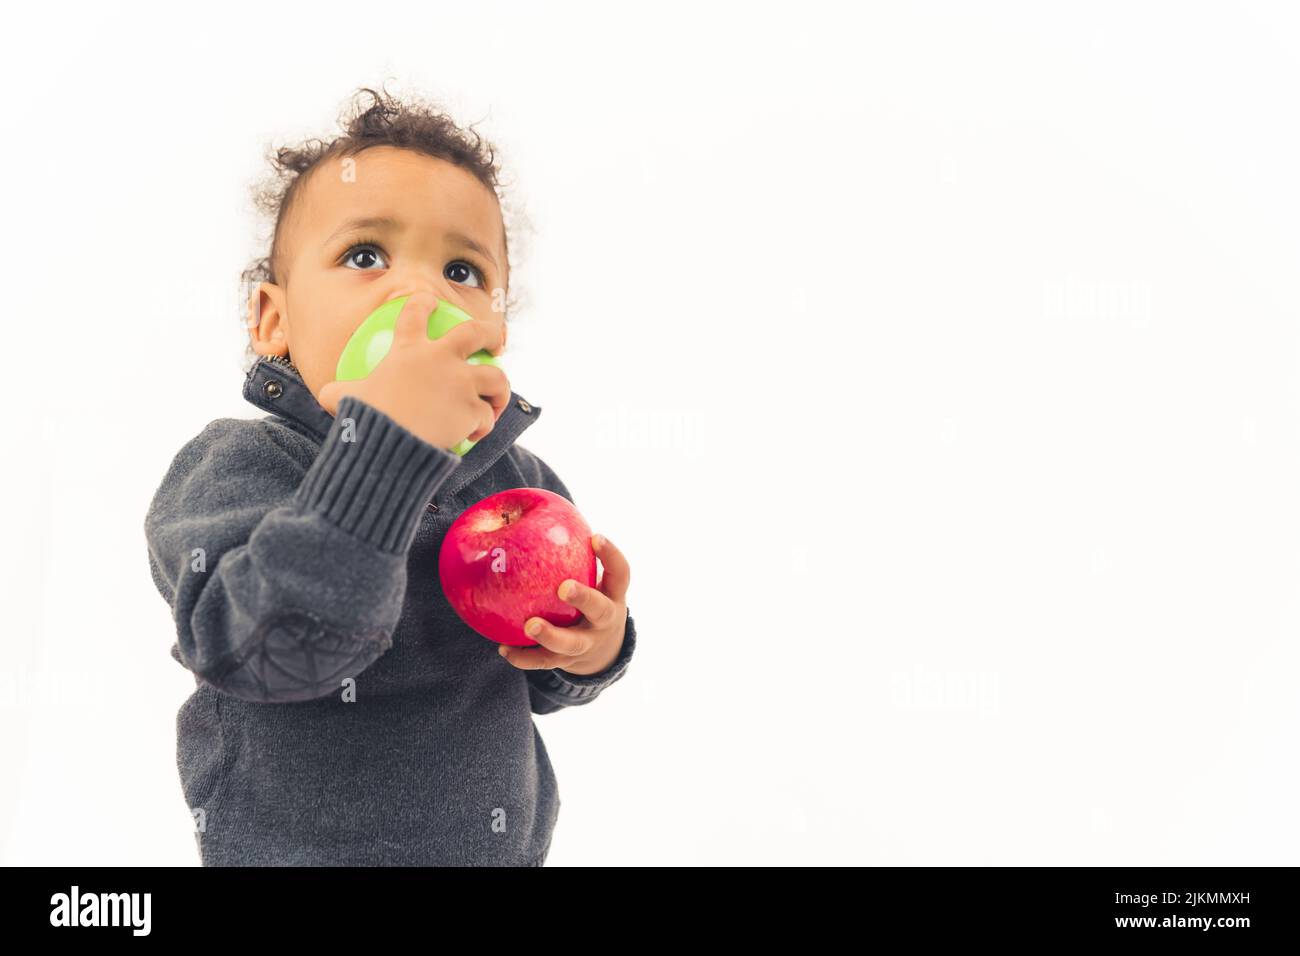 Kleiner afroamerikanischer Junge, der mit der rechten Hand einen Apfel isst und einen anderen Apfel mit einem anderen hält - Nahaufnahme isoliert. Hochwertige Fotos Stockfoto